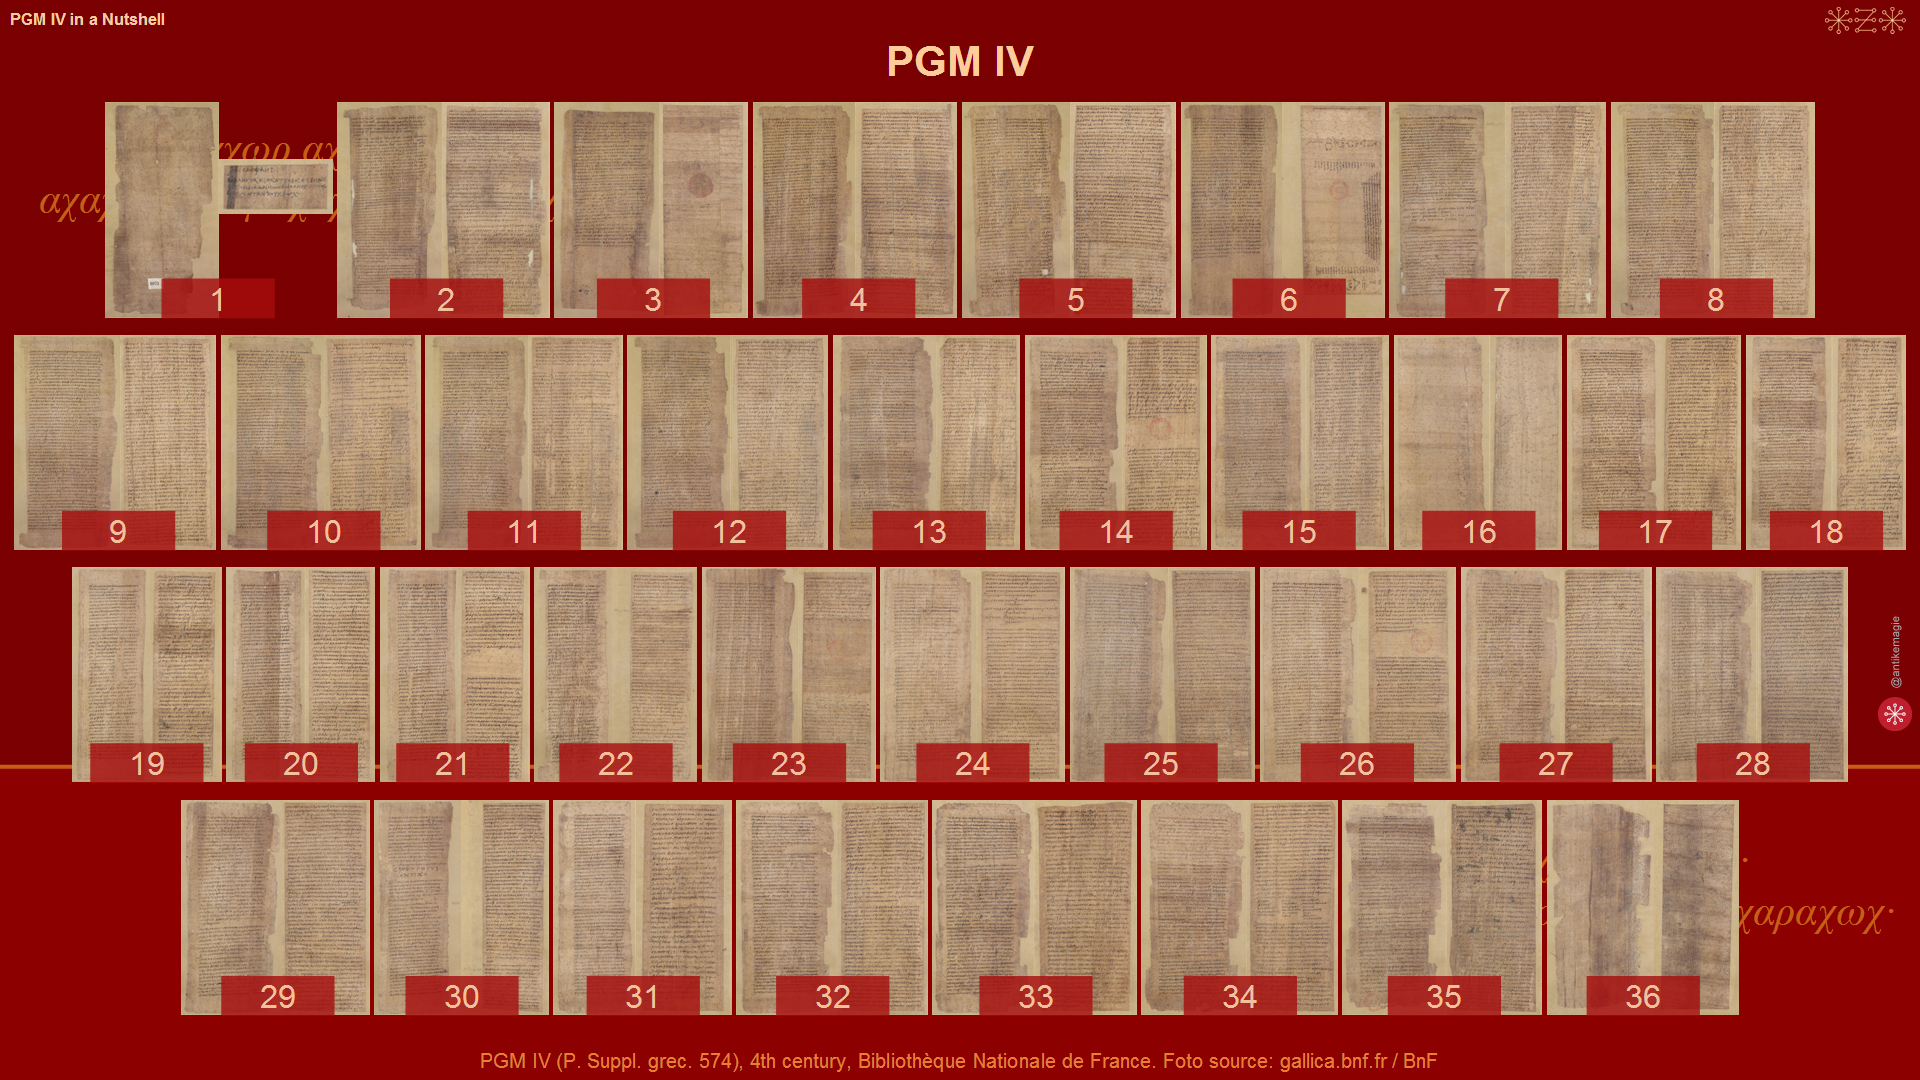 PGM IV - Bibliothèque Nationale de France, P.suppl.grec. 574